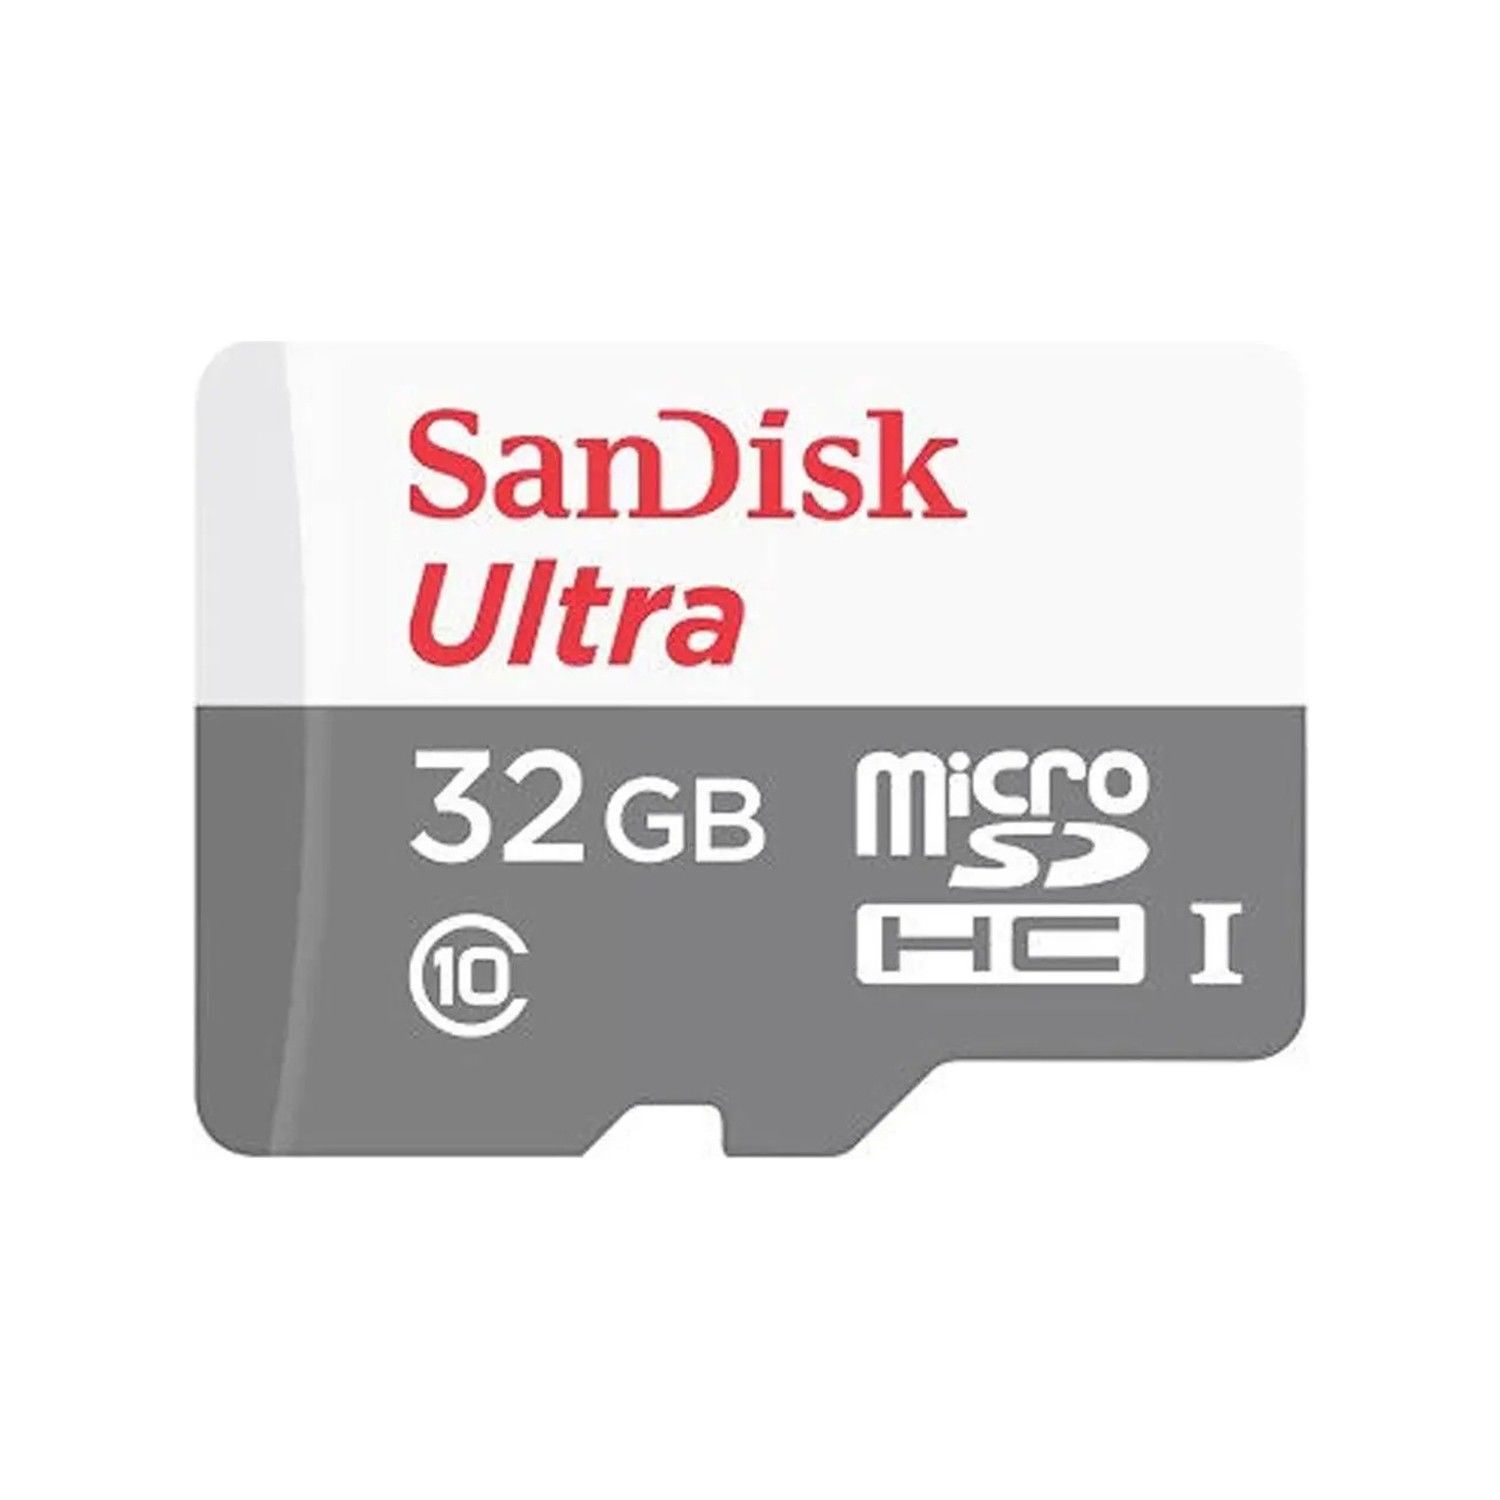 SanDisk Ultra 32GB SDHC 100MB/s Hafıza Kartı